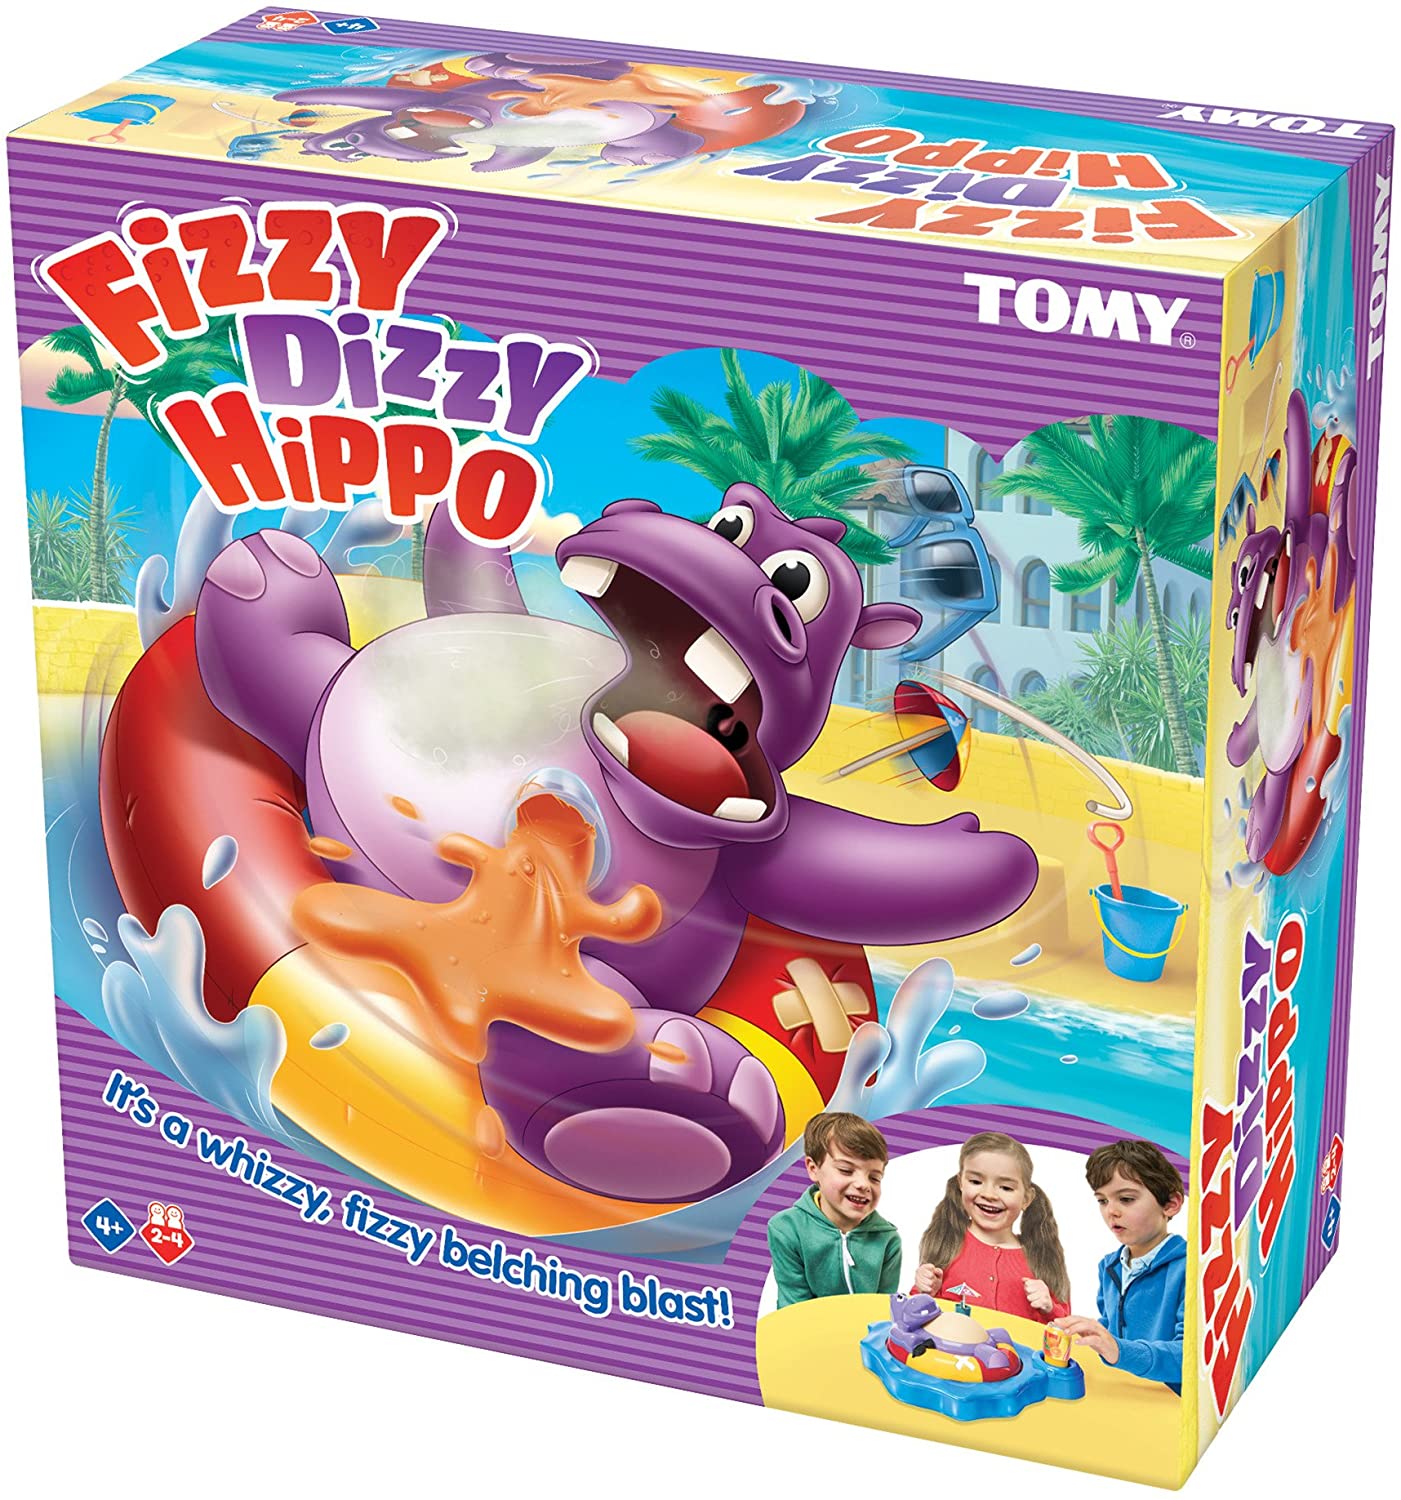 Tomy Fizzy Dizzy Hippo Game